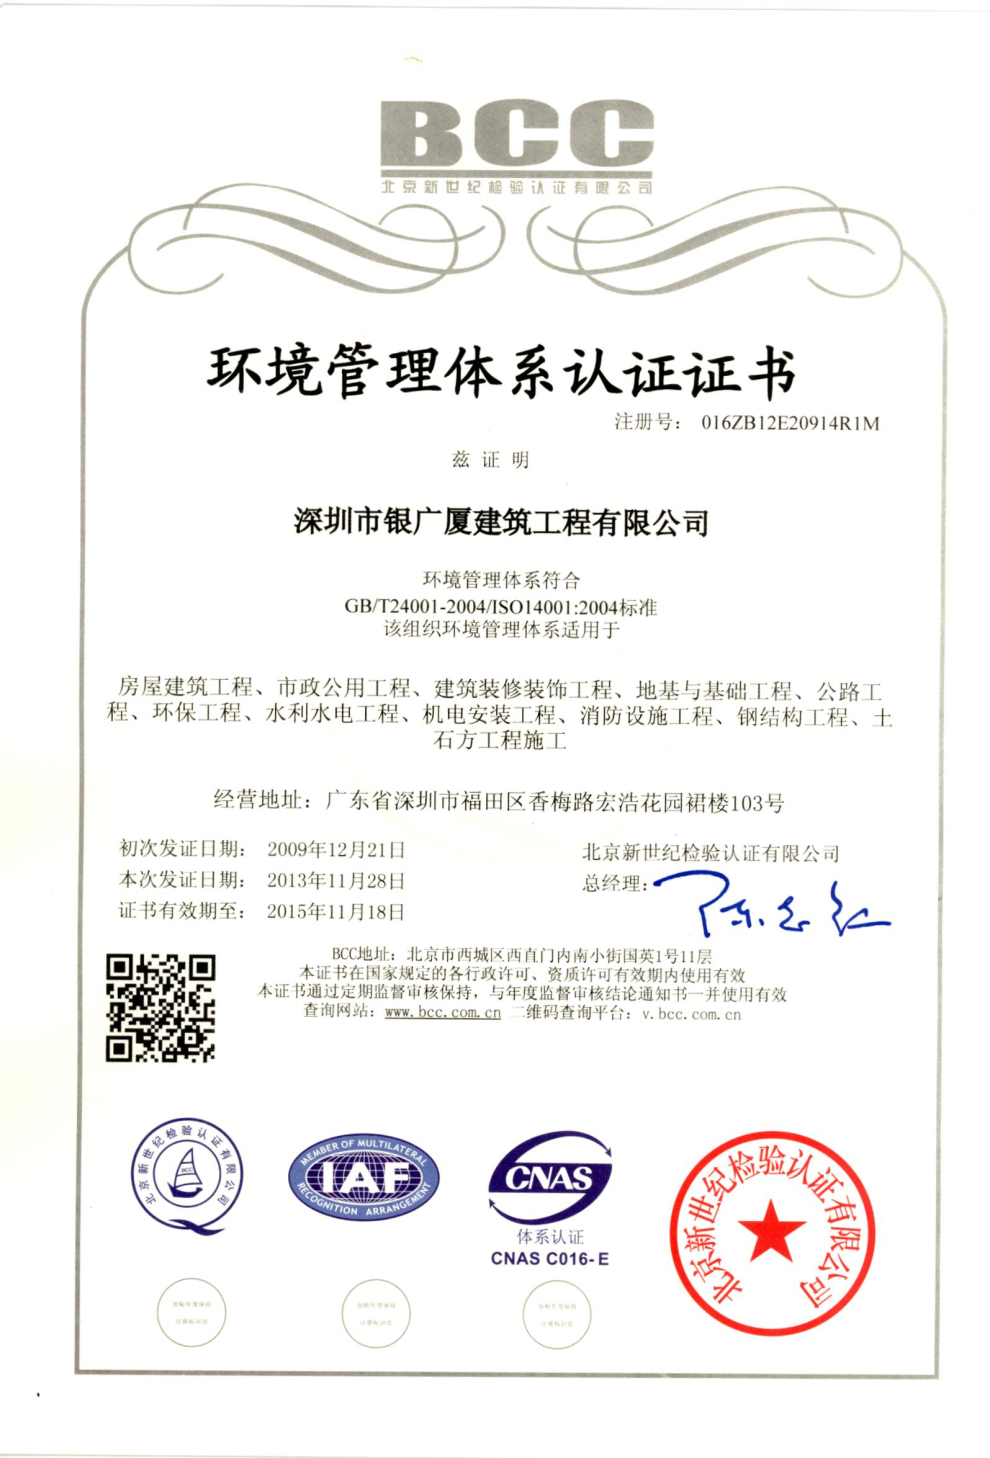 12.环境管理体系证书